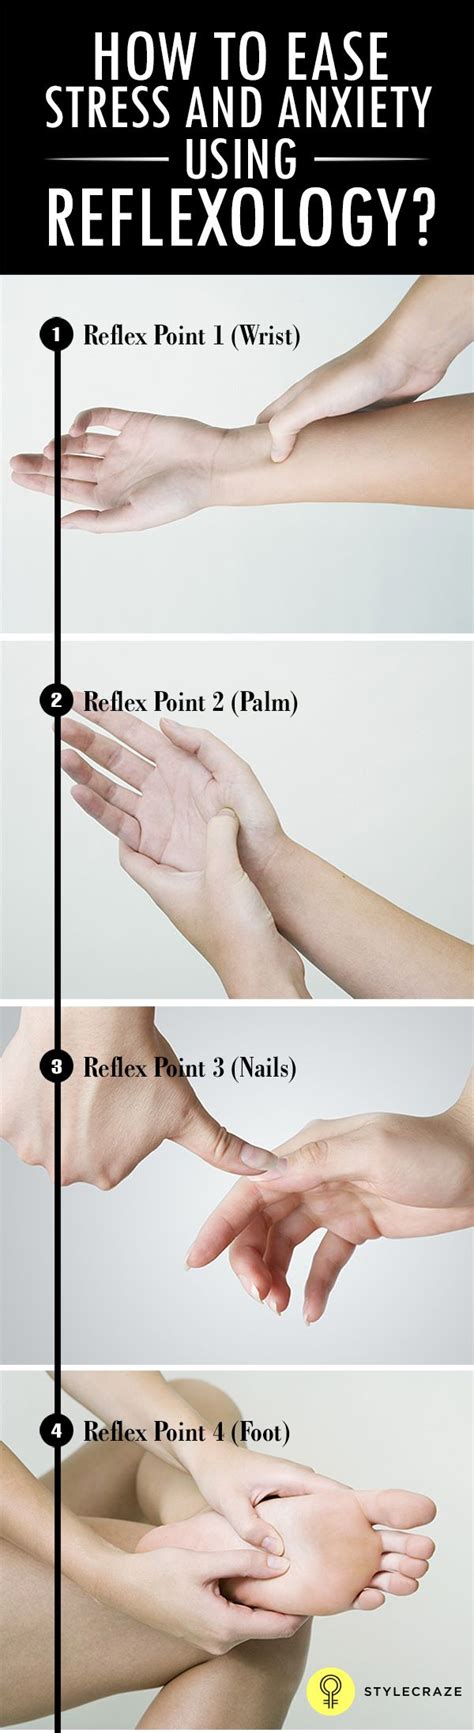 17 Best Images About Hand Reflexology Chart On Pinterest Hand Massage